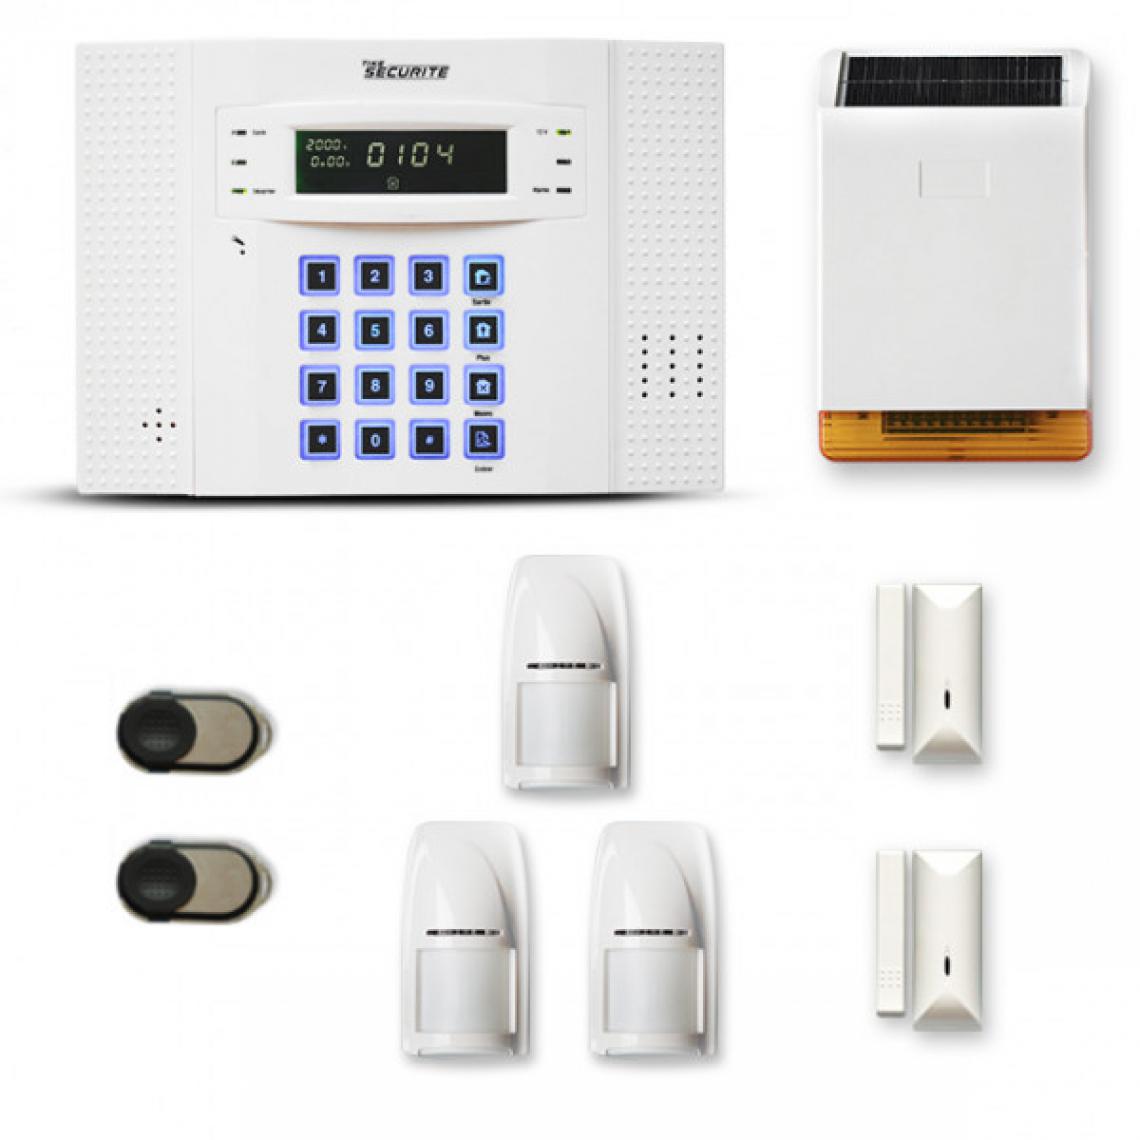 Tike Securite - Alarme maison sans fil DNB45 Compatible Box internet - Alarme connectée